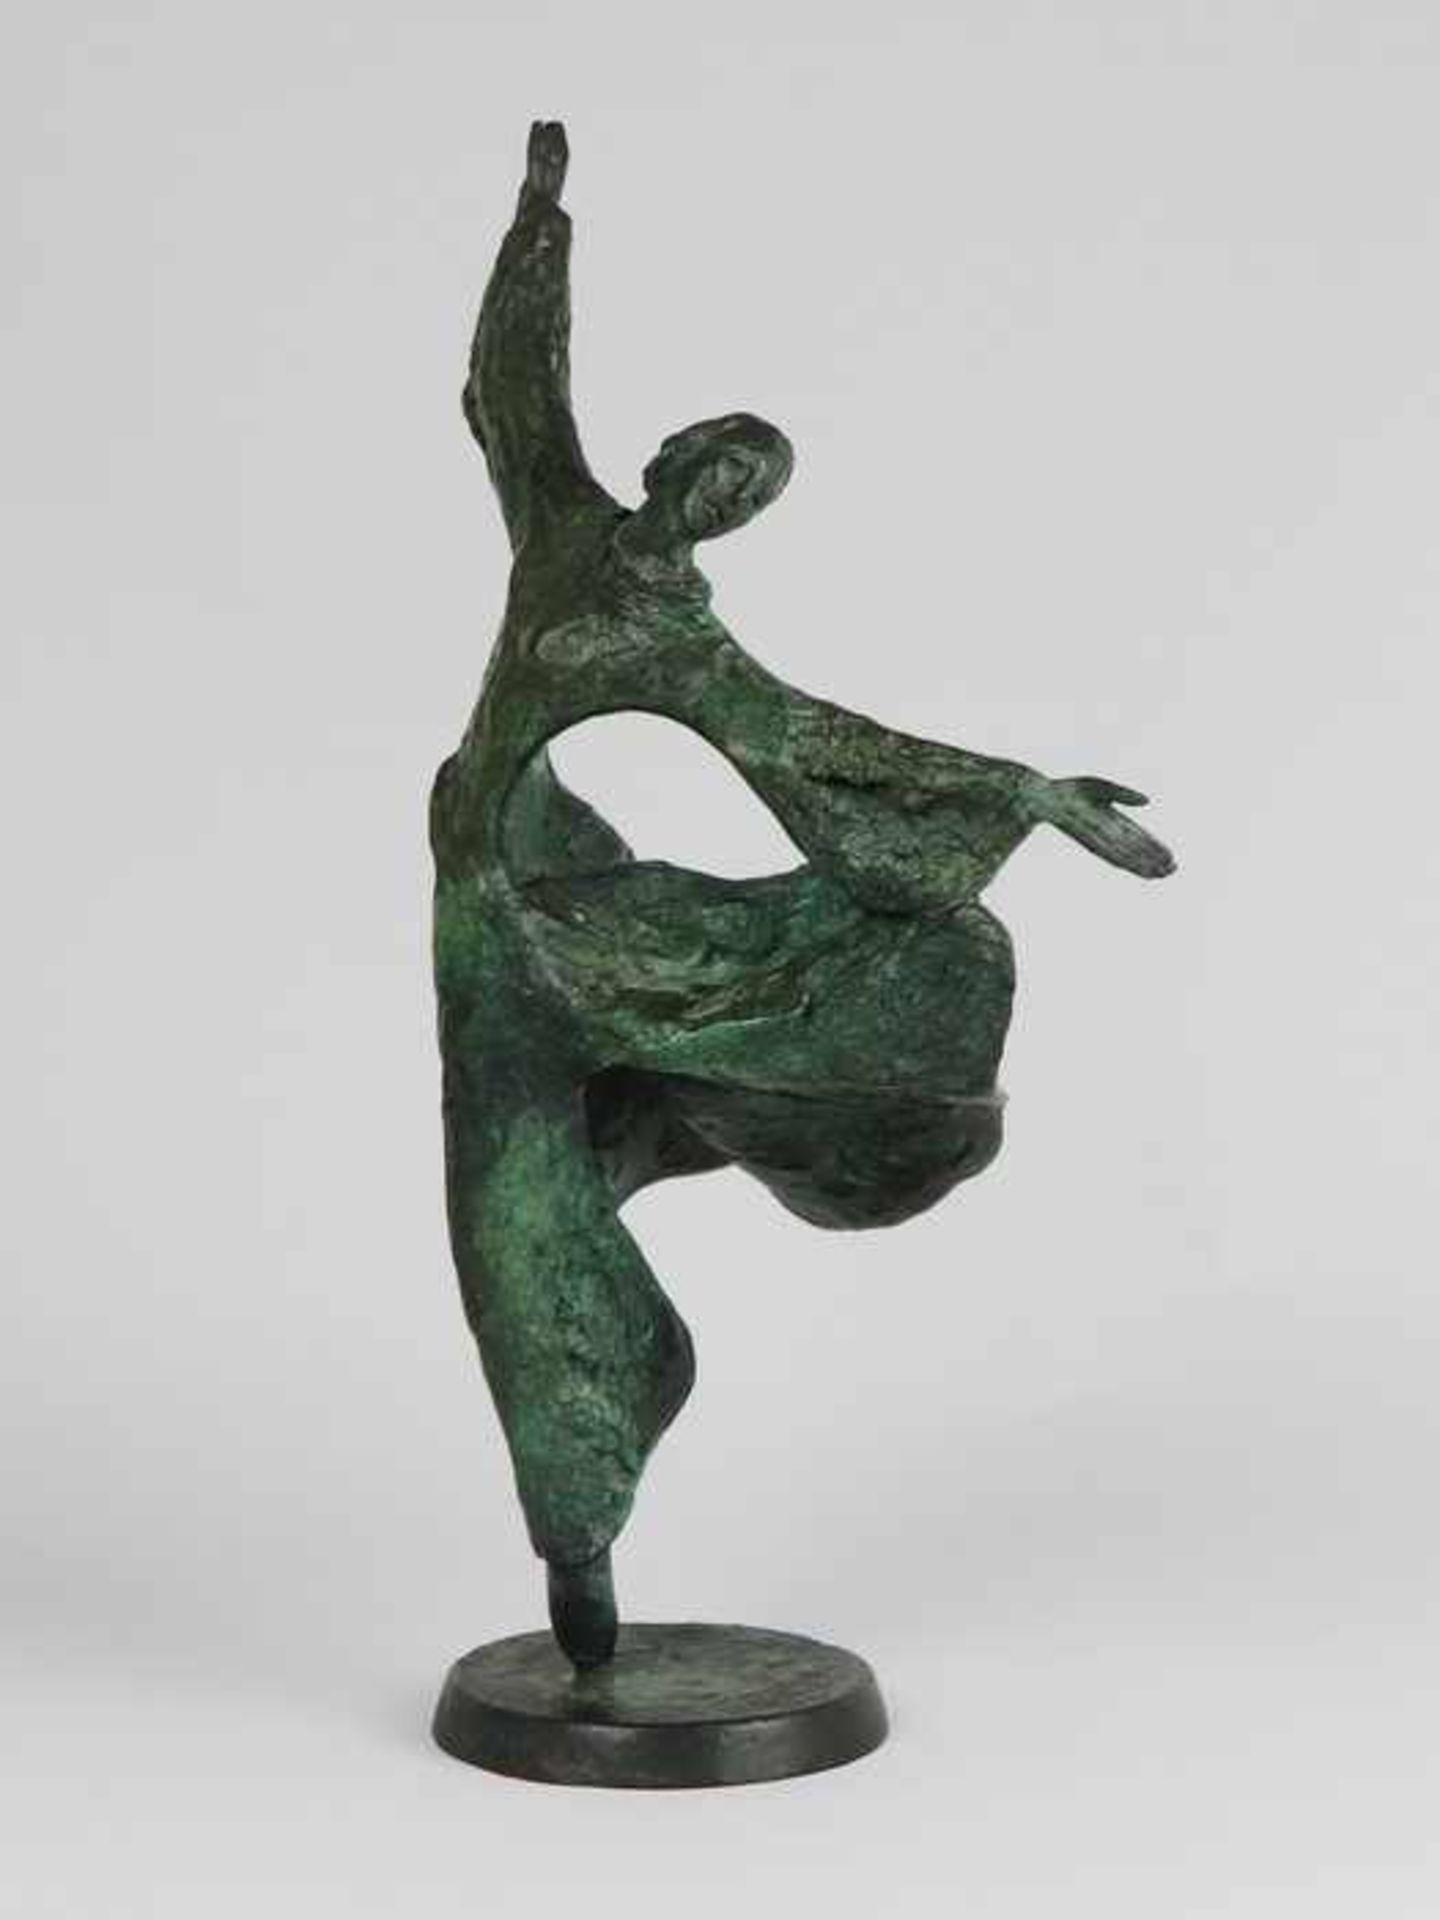 Unleserlich signiert20.Jh., Bronze, grün patiniert, vollplastische Figur einer tanzenden